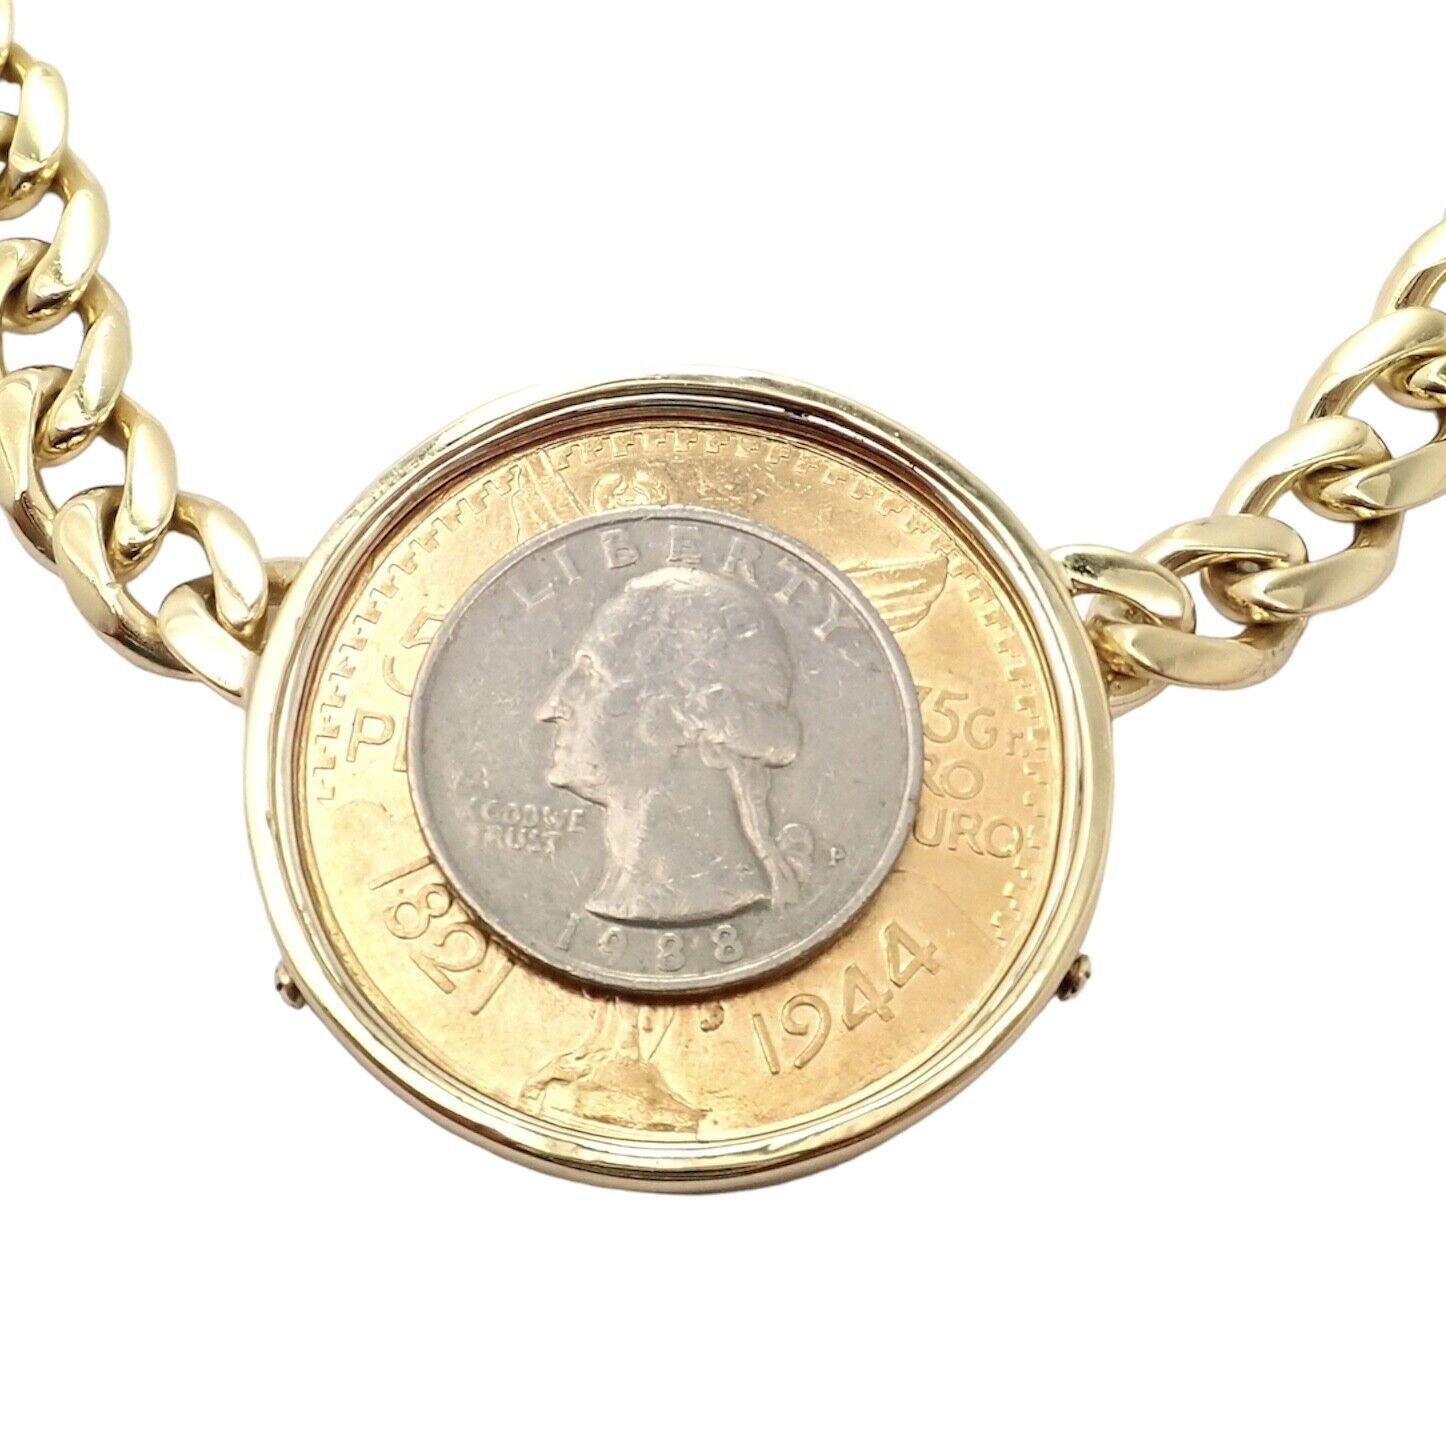 centenario coin